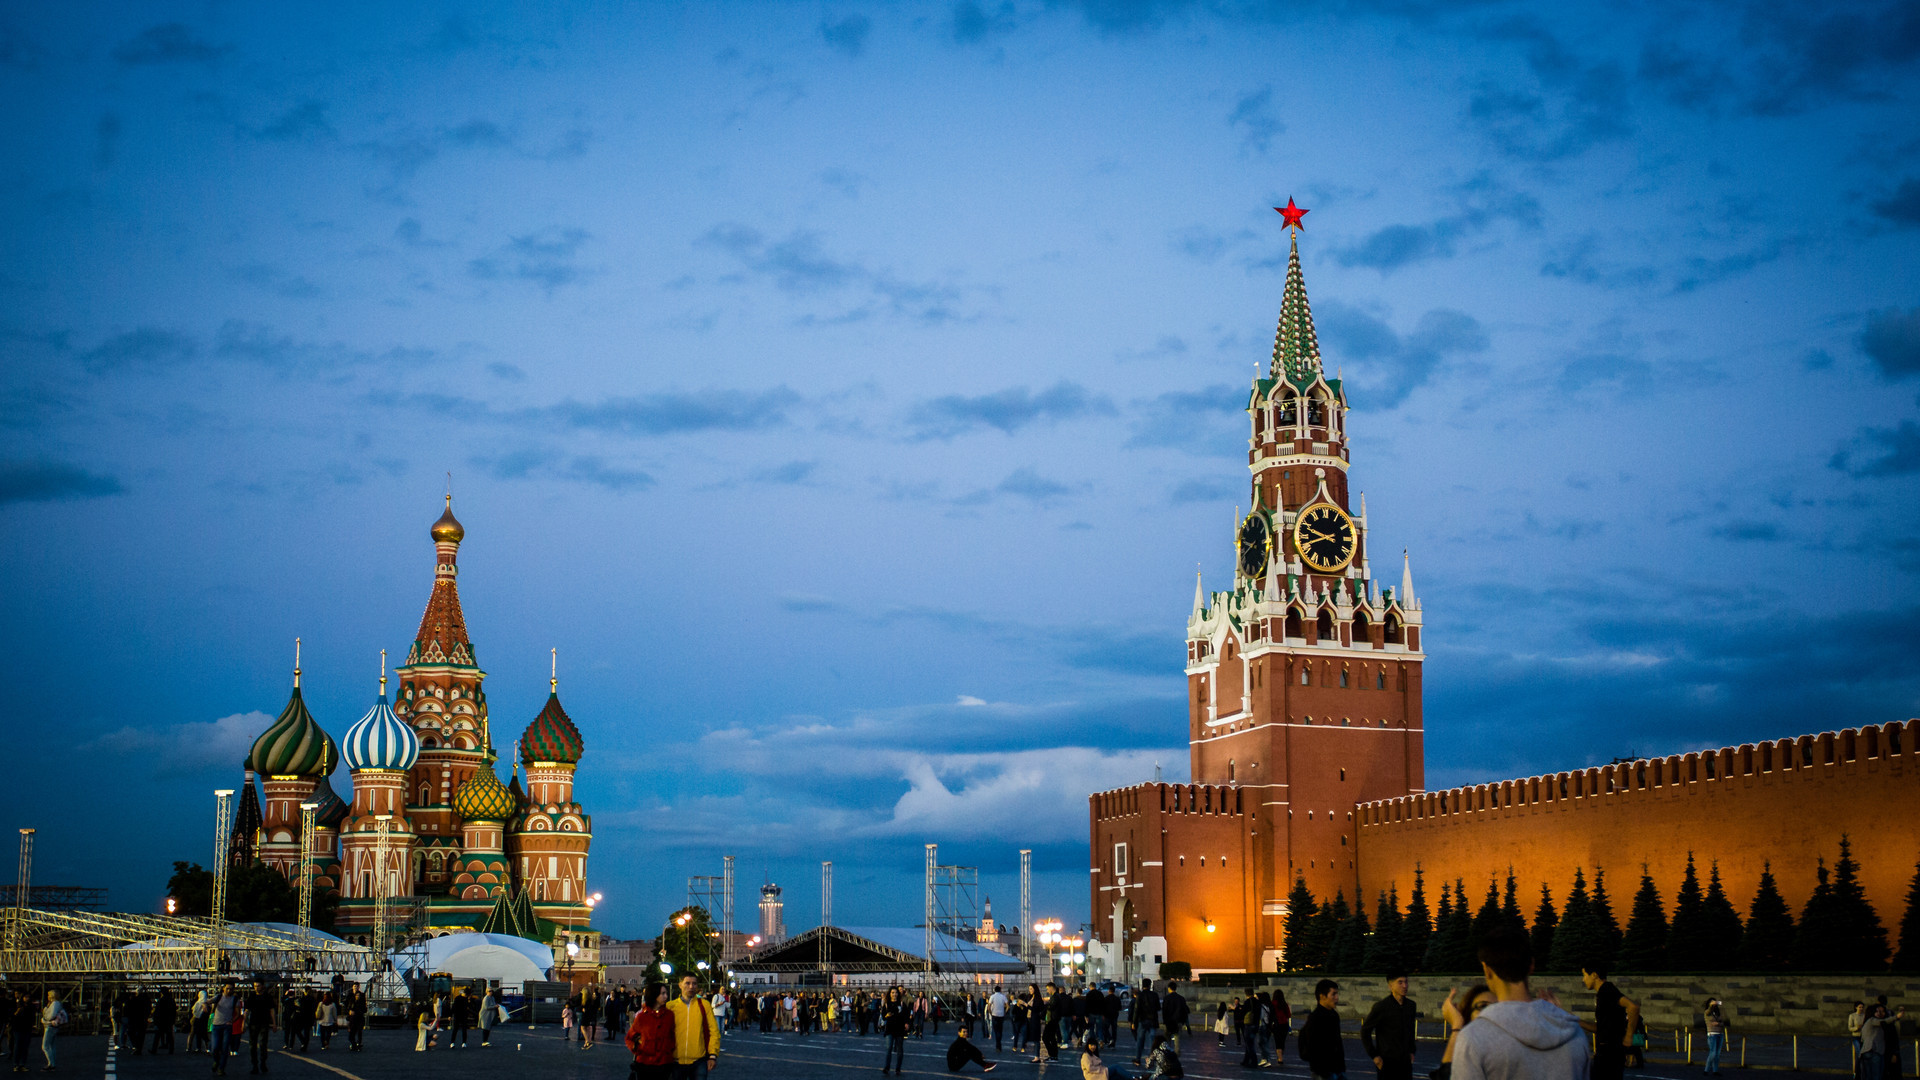 习近平与普京正式会谈 中俄联合声明吁对话解决乌克兰危机